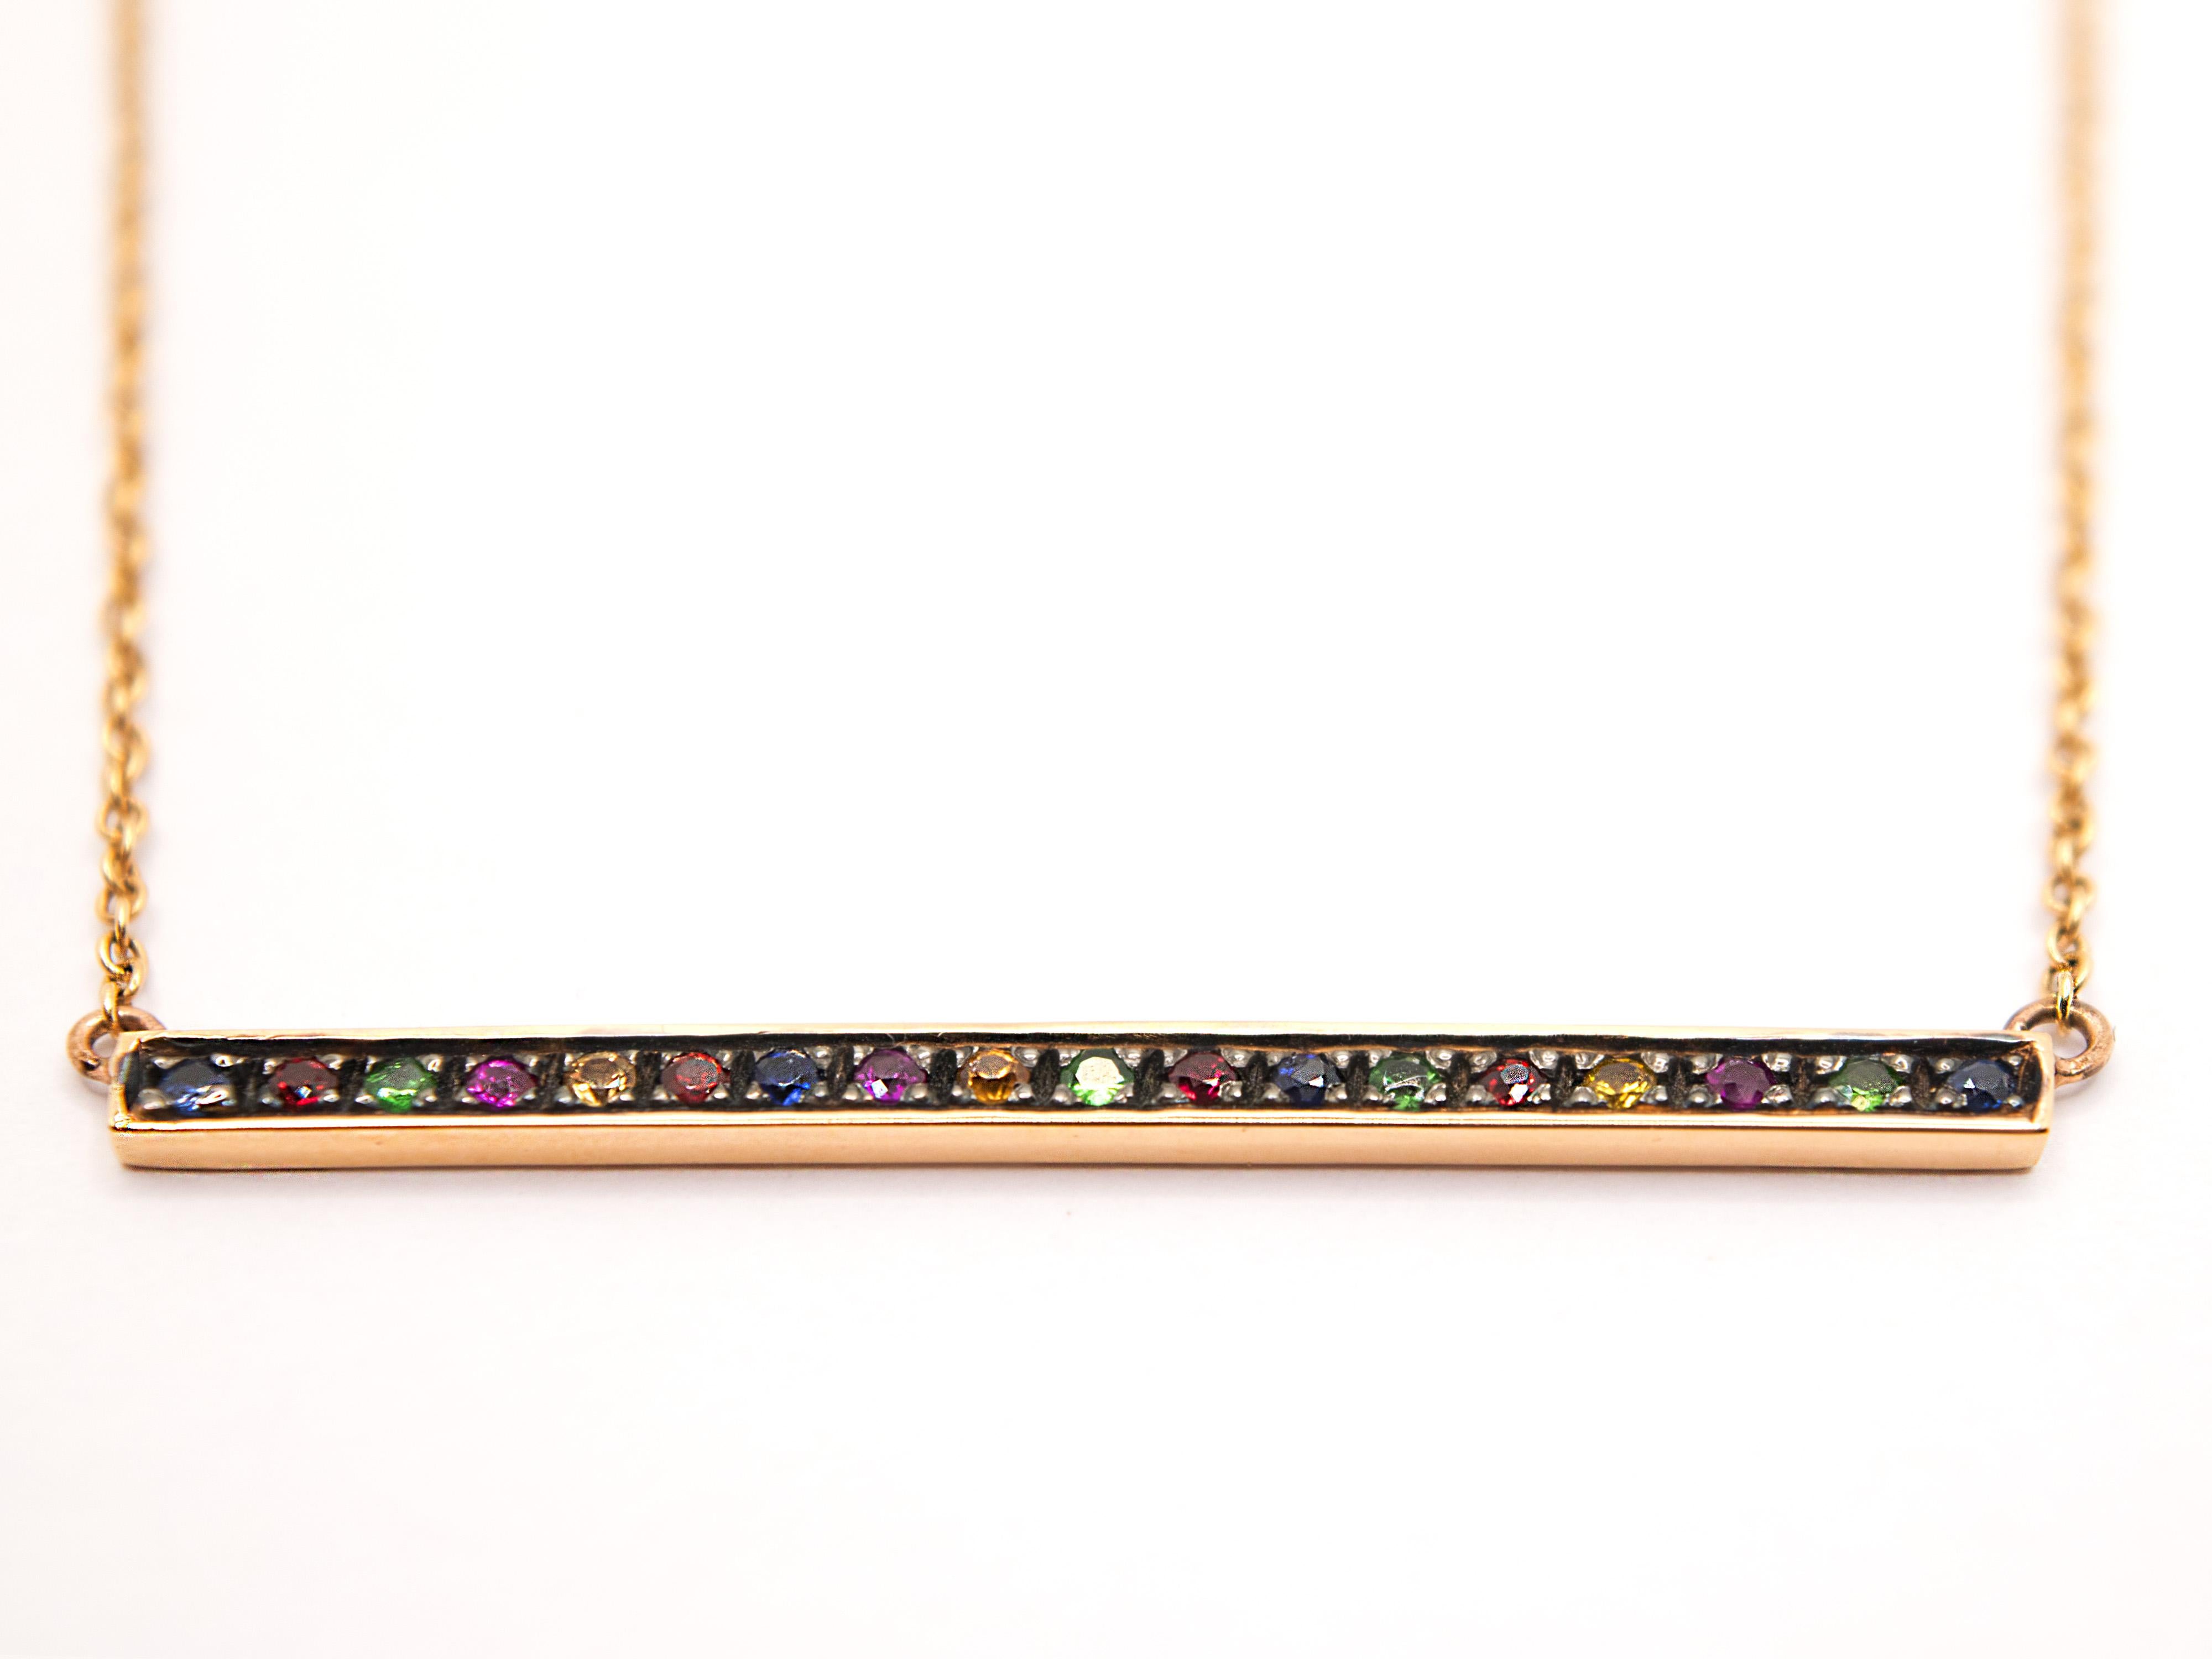 Ce collier en or rose 18kt est fabriqué à la main en Italie.

La barre centrale est composée de saphir, de grenat et de rubis, tandis que les pointes qui retiennent les pierres ont été brunies pour les faire ressortir davantage.

La chaîne rolo qui